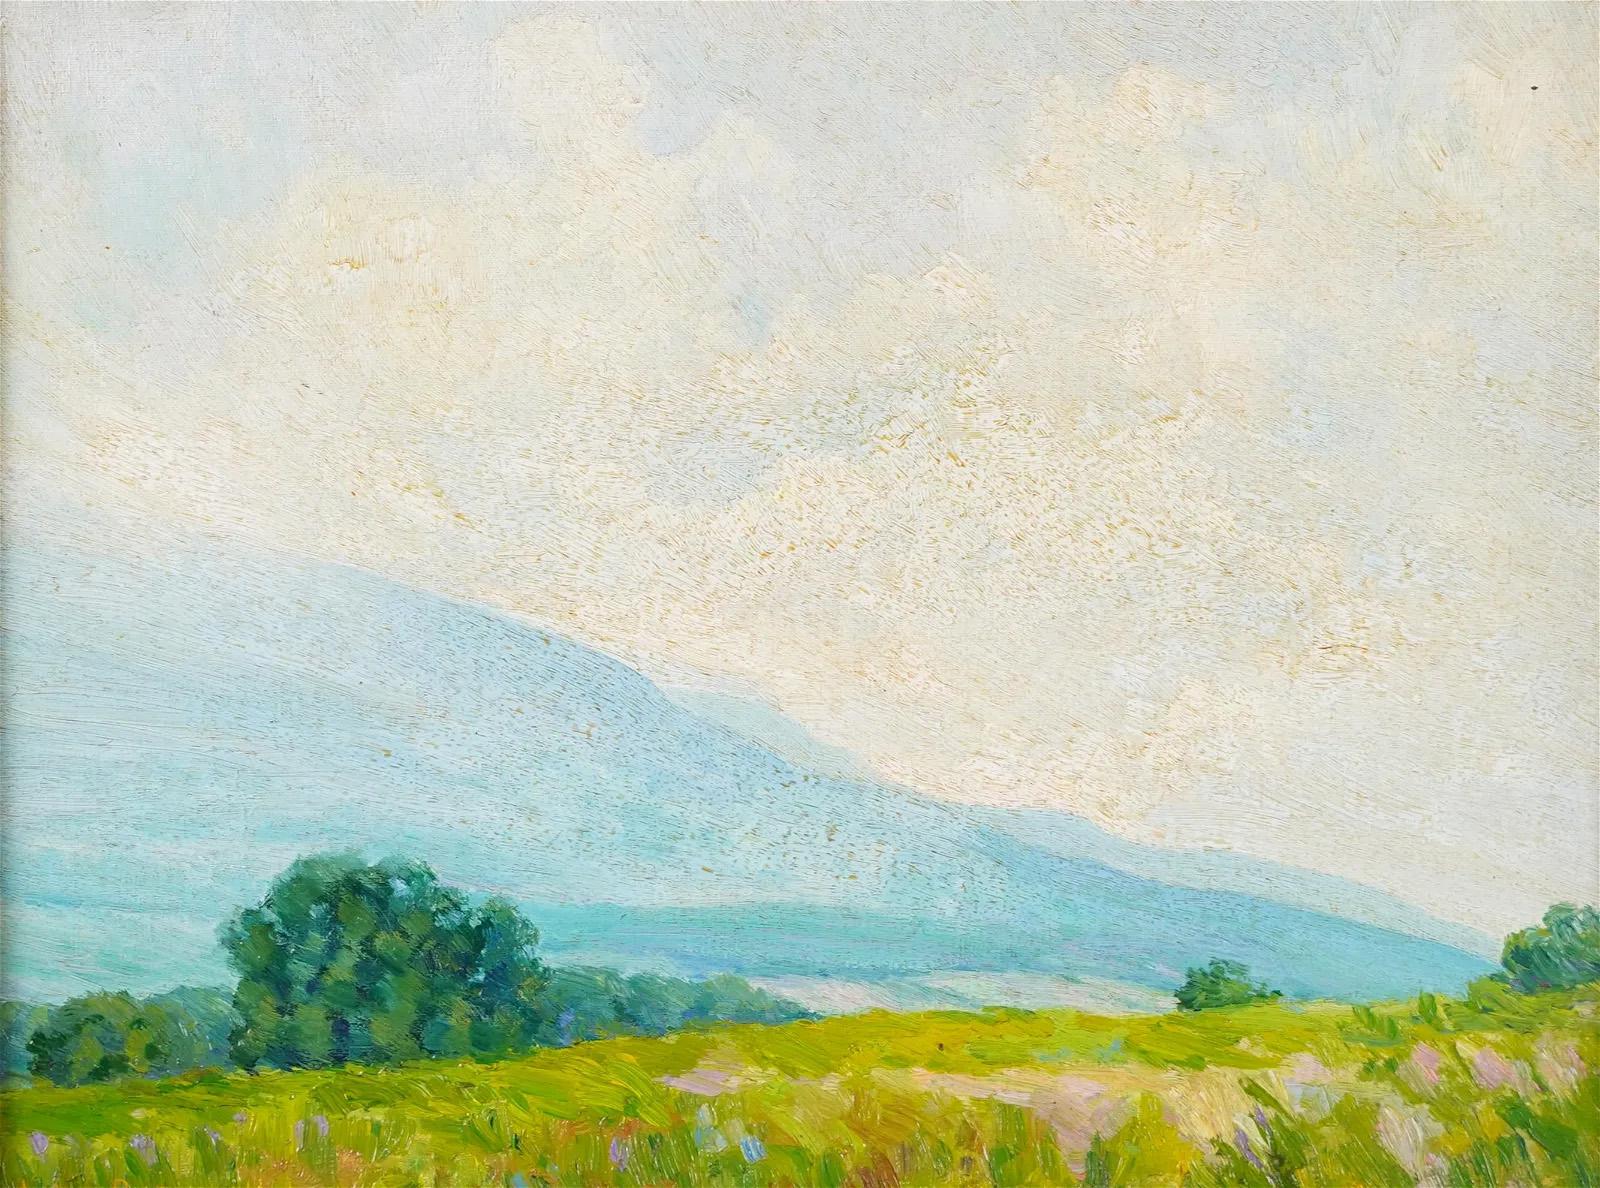 Hübsch gemaltes amerikanisches impressionistisches Landschaftsgemälde von John Rummell (1861 - 1942).  Öl auf Karton.  Gerahmt. Unterschrieben.